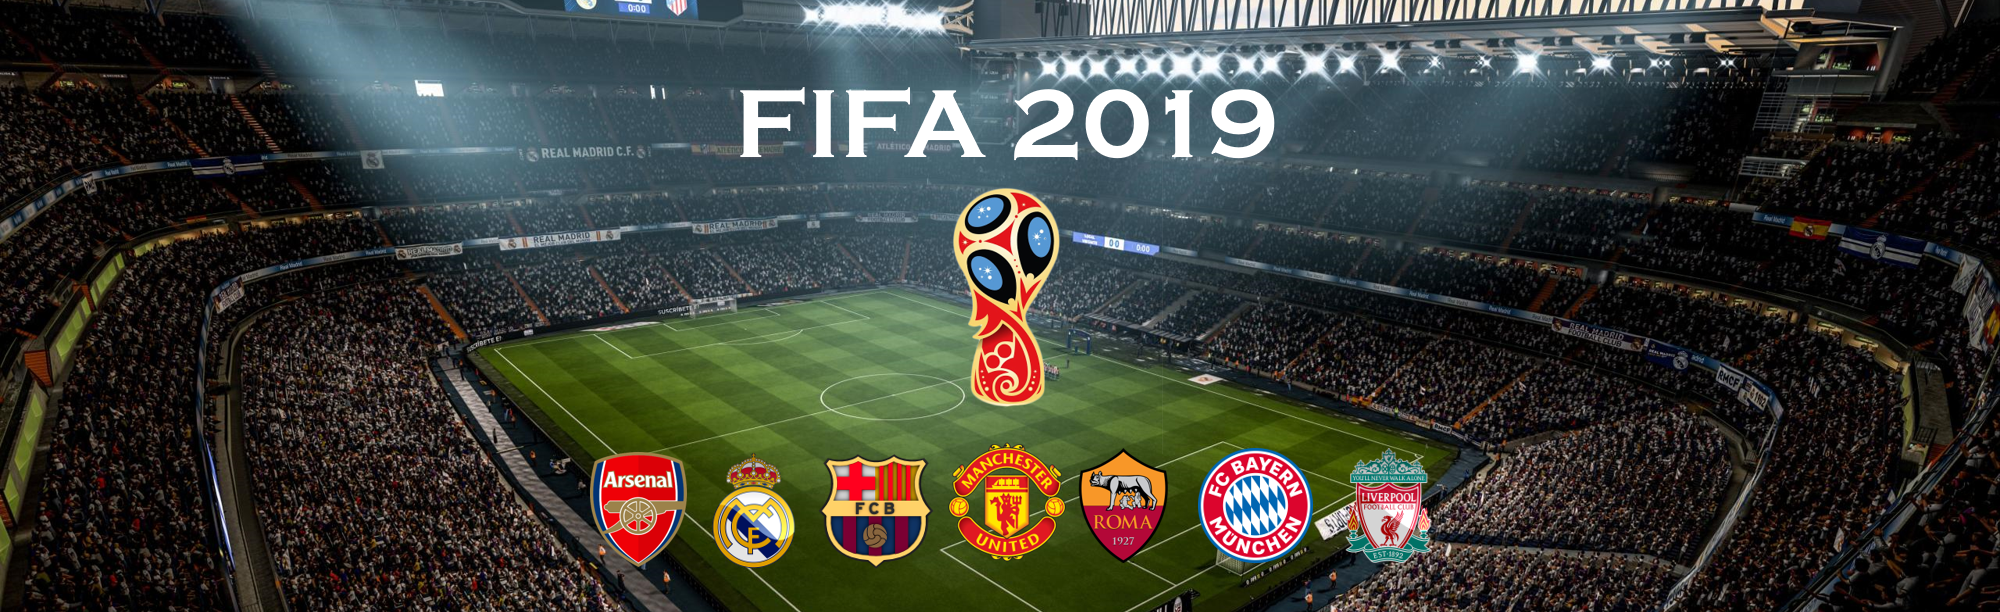 FIFA-Banner-Edureka